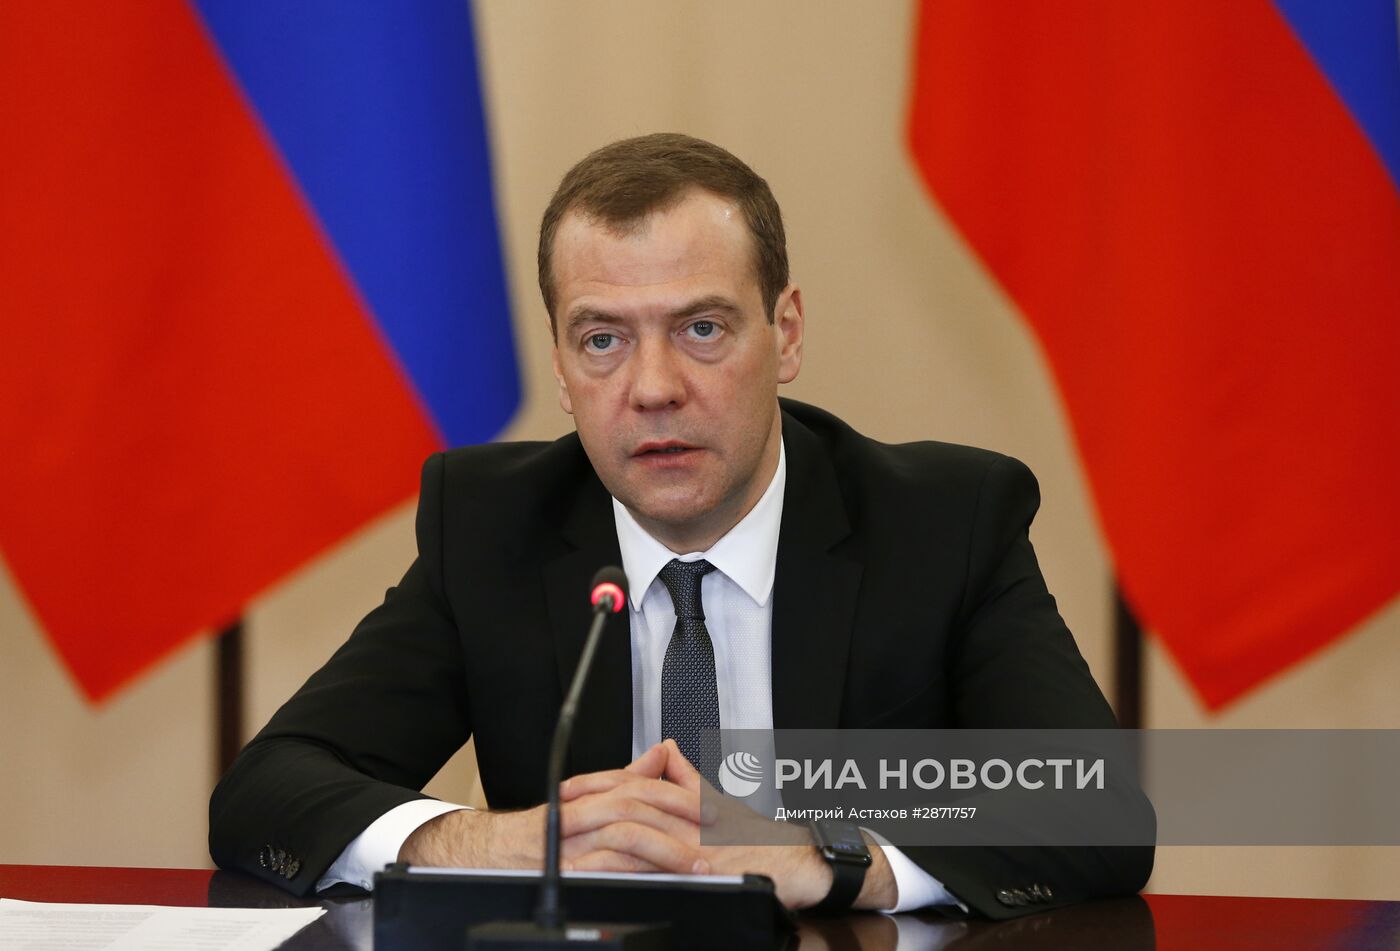 Рабочая поездка премьер-министра РФ Д. Медведева во Владимир